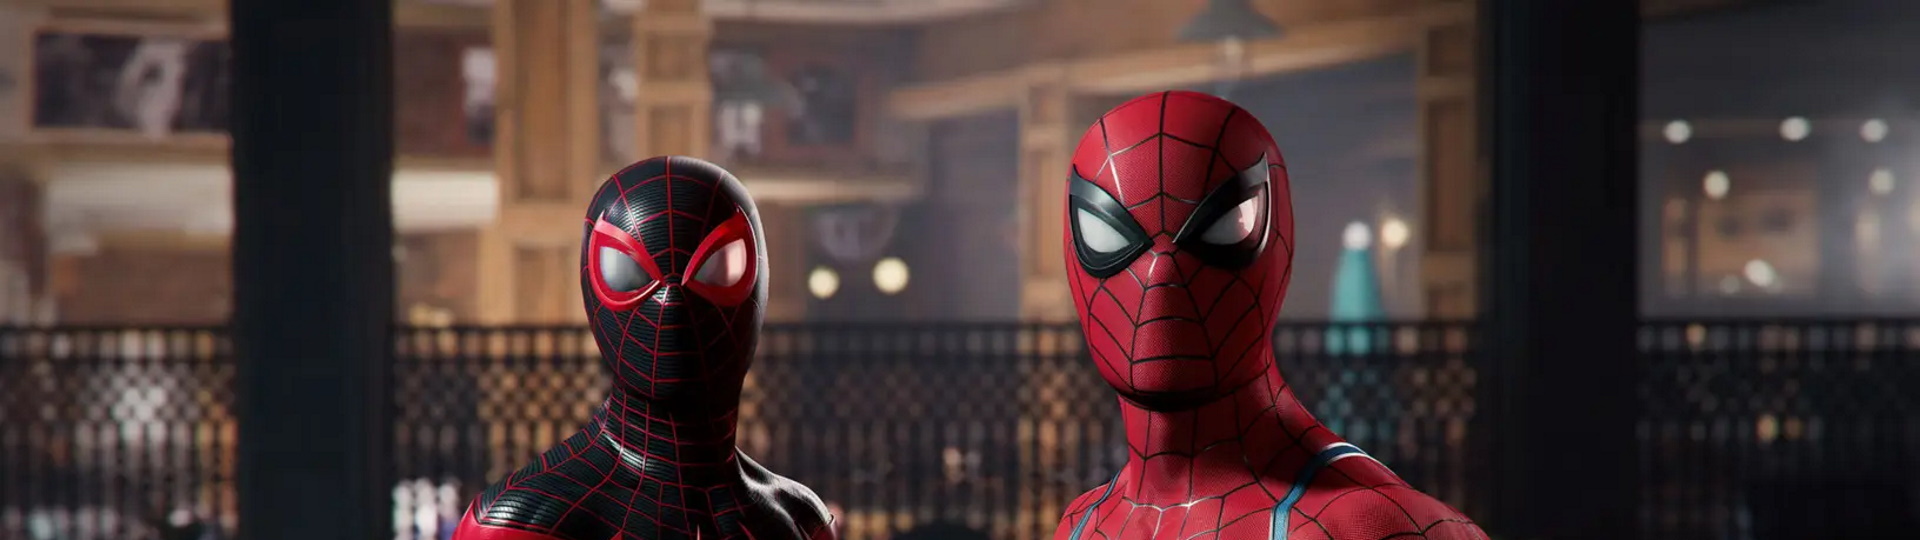 Spider-Man 2 v pěkně akčním gameplay traileru | Videa